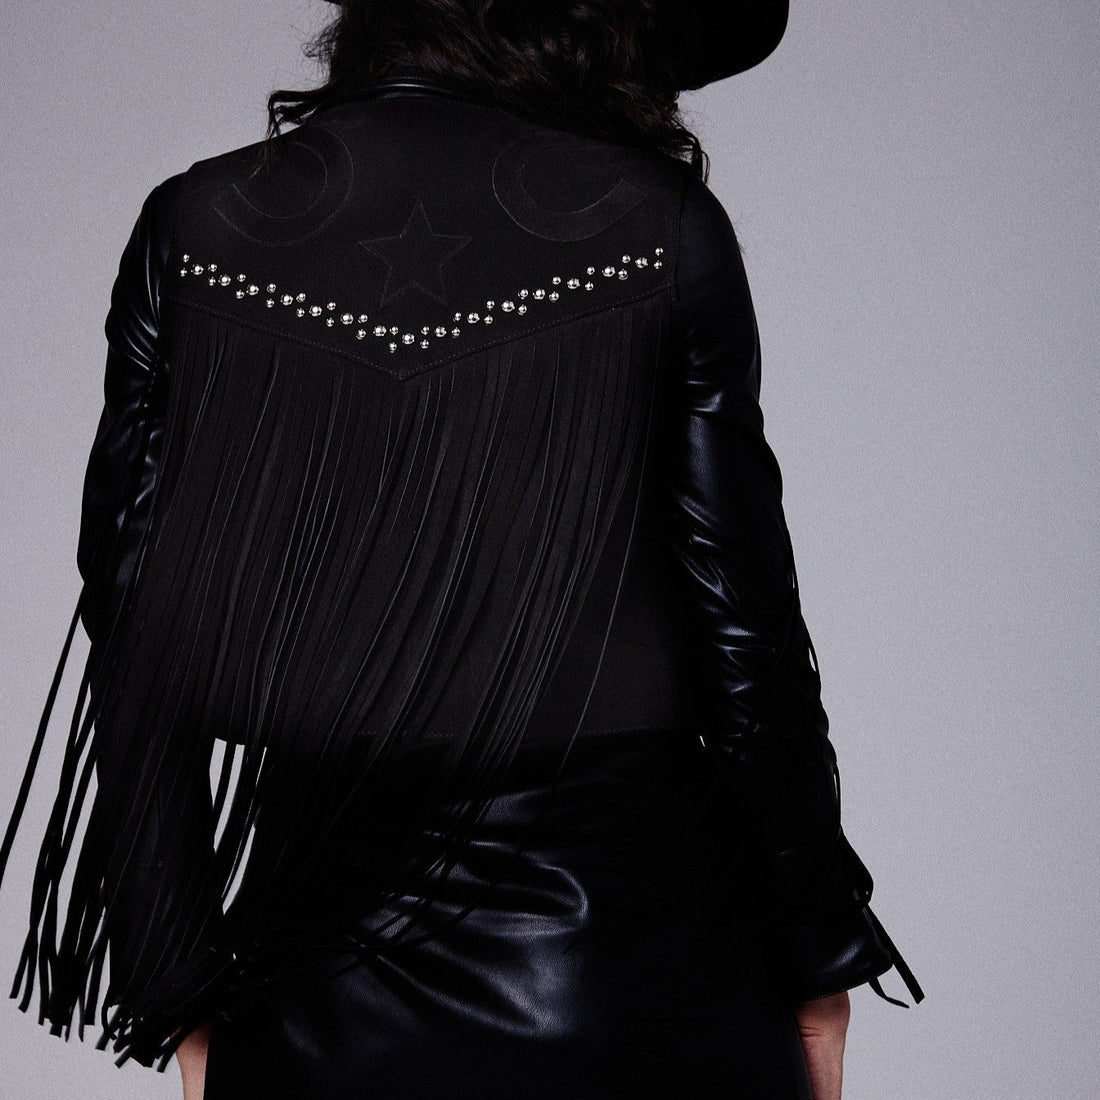 black studded fringe vest with horseshoe applique detail on  on the back